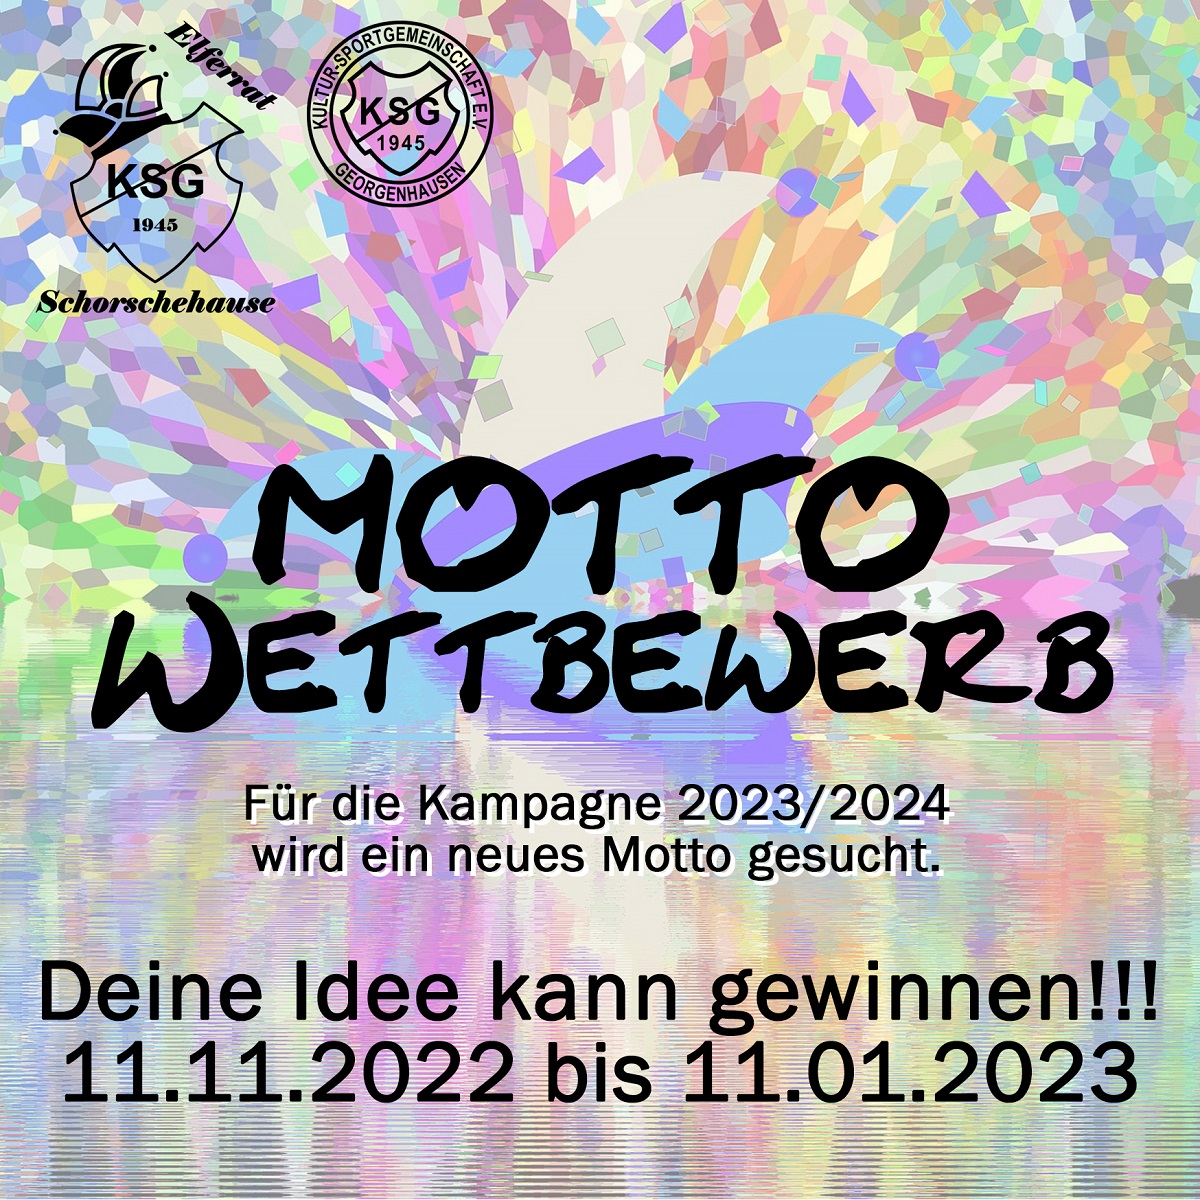 Mottowettbewerb2023